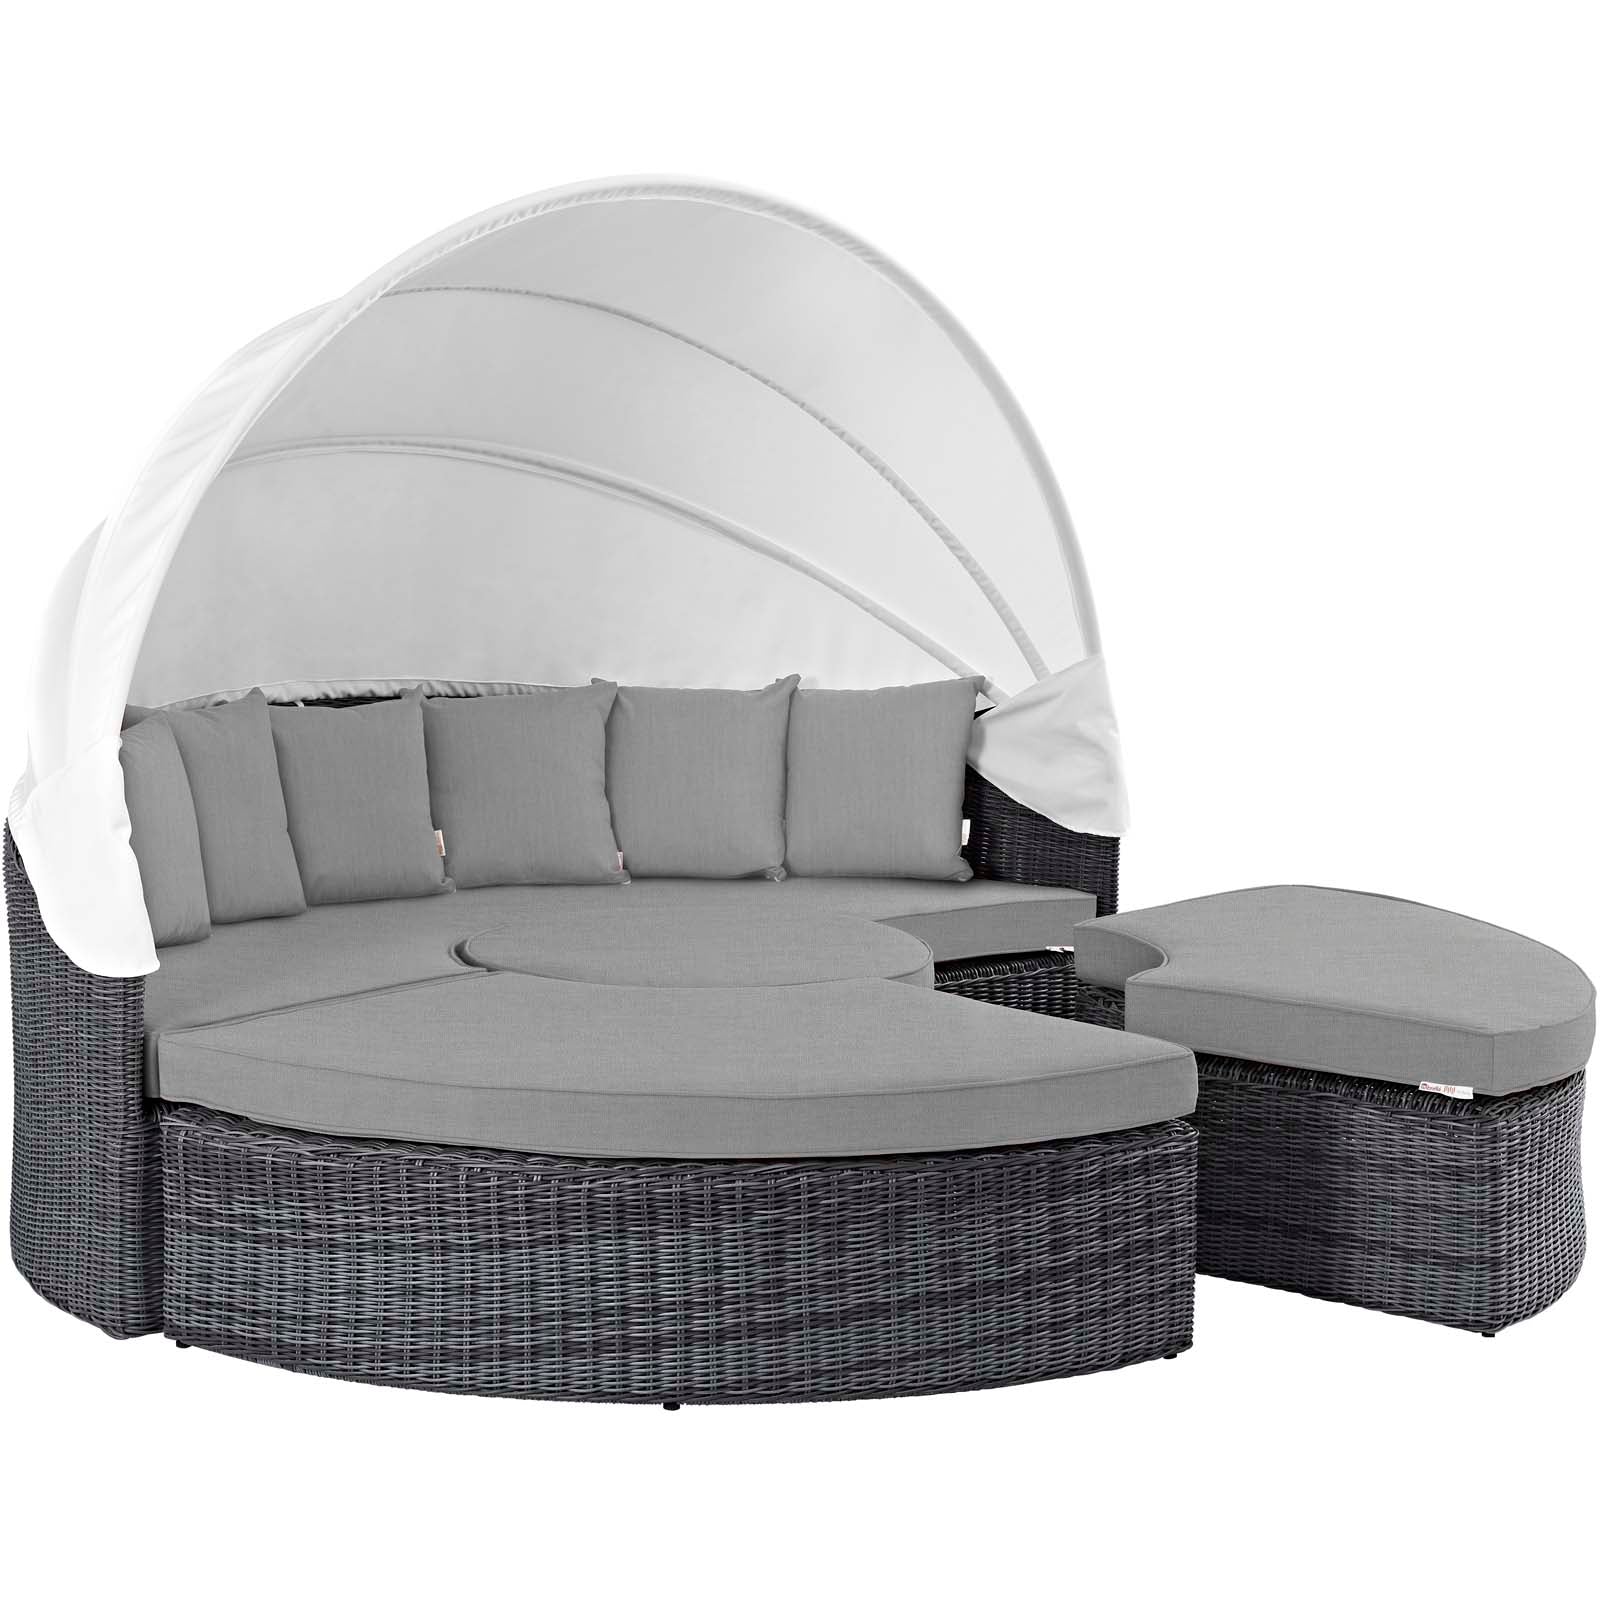 Summon Canopy Outdoor Patio Sunbrella® Daybed